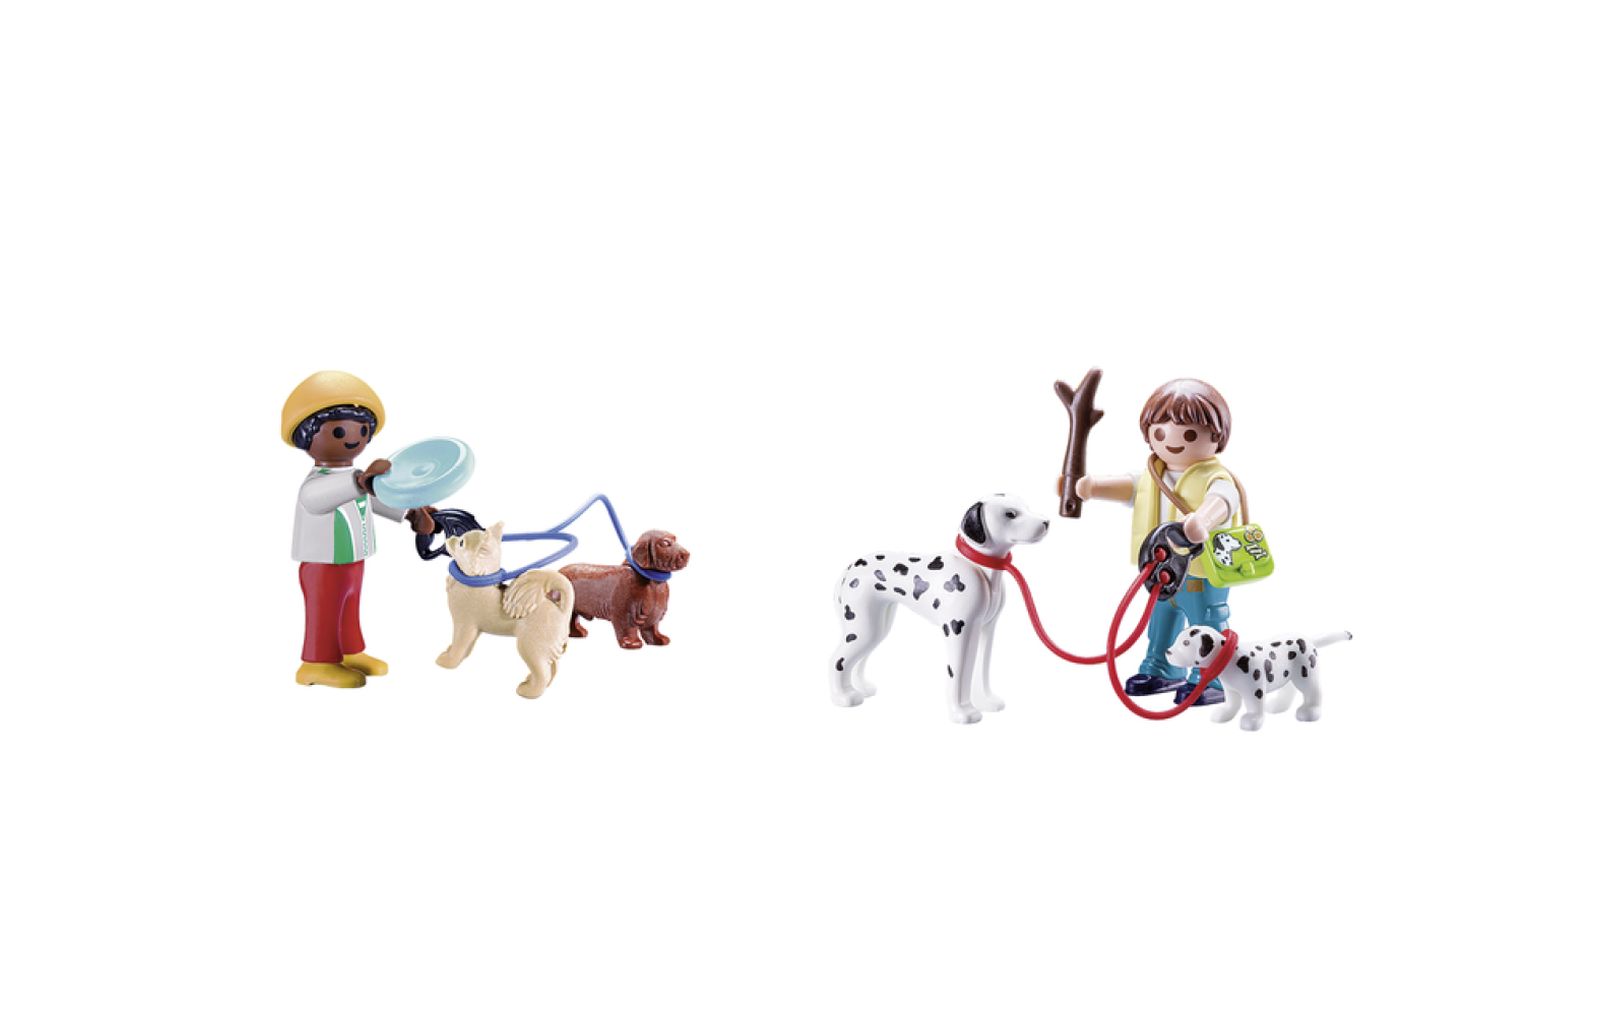 Carrying case bambini con cuccioli - Playmobil